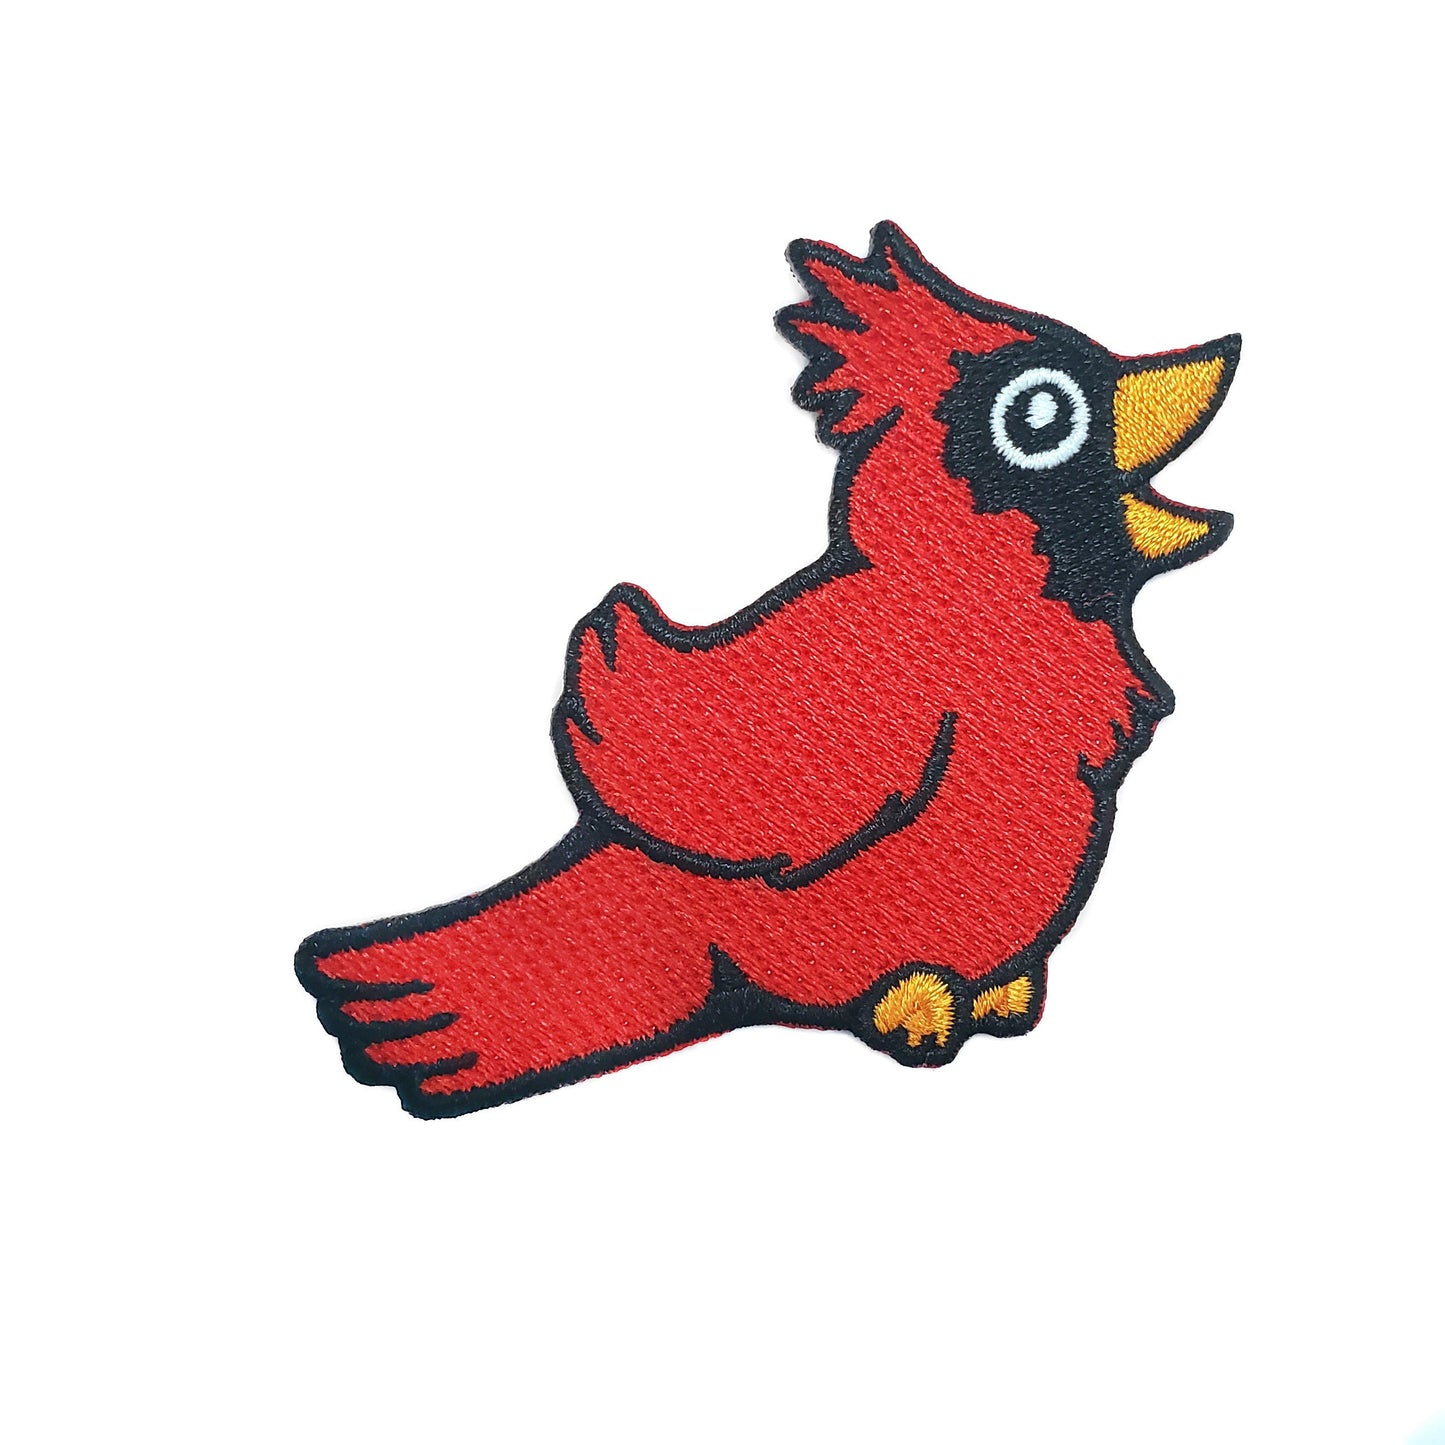 Cardinal Bird Patch - Kolorspun Enamel Pins